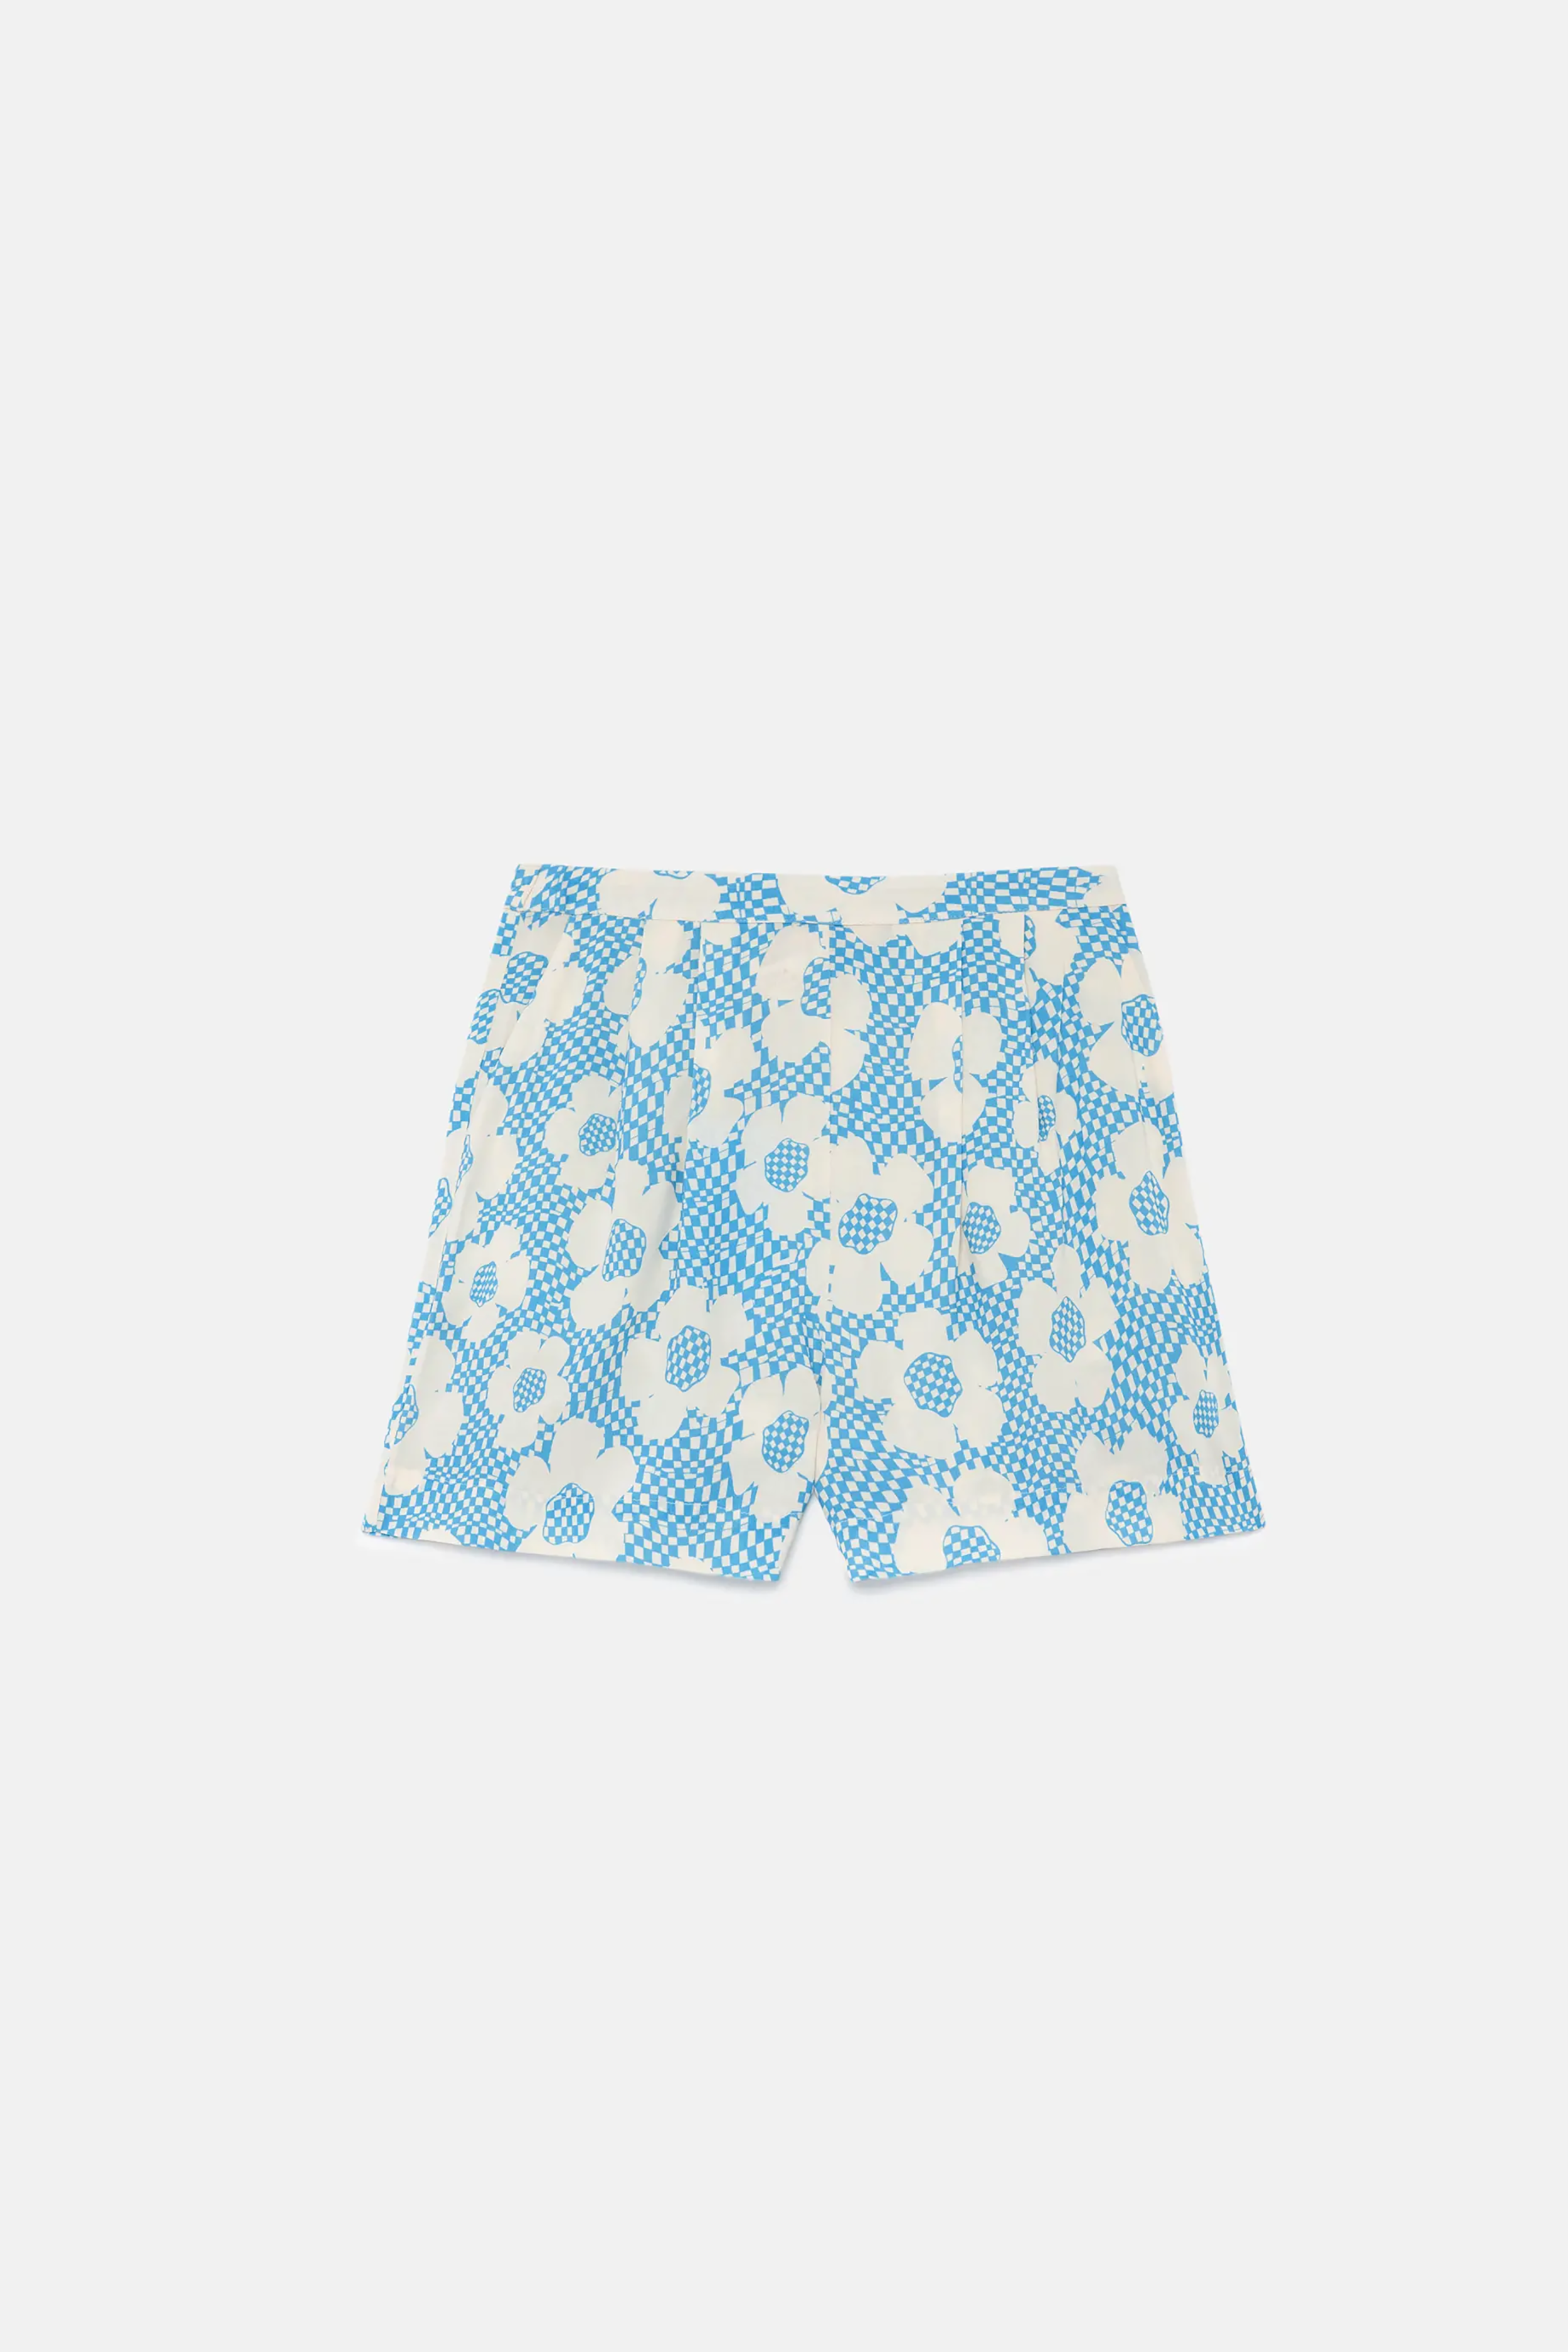 Flower Box Shorts